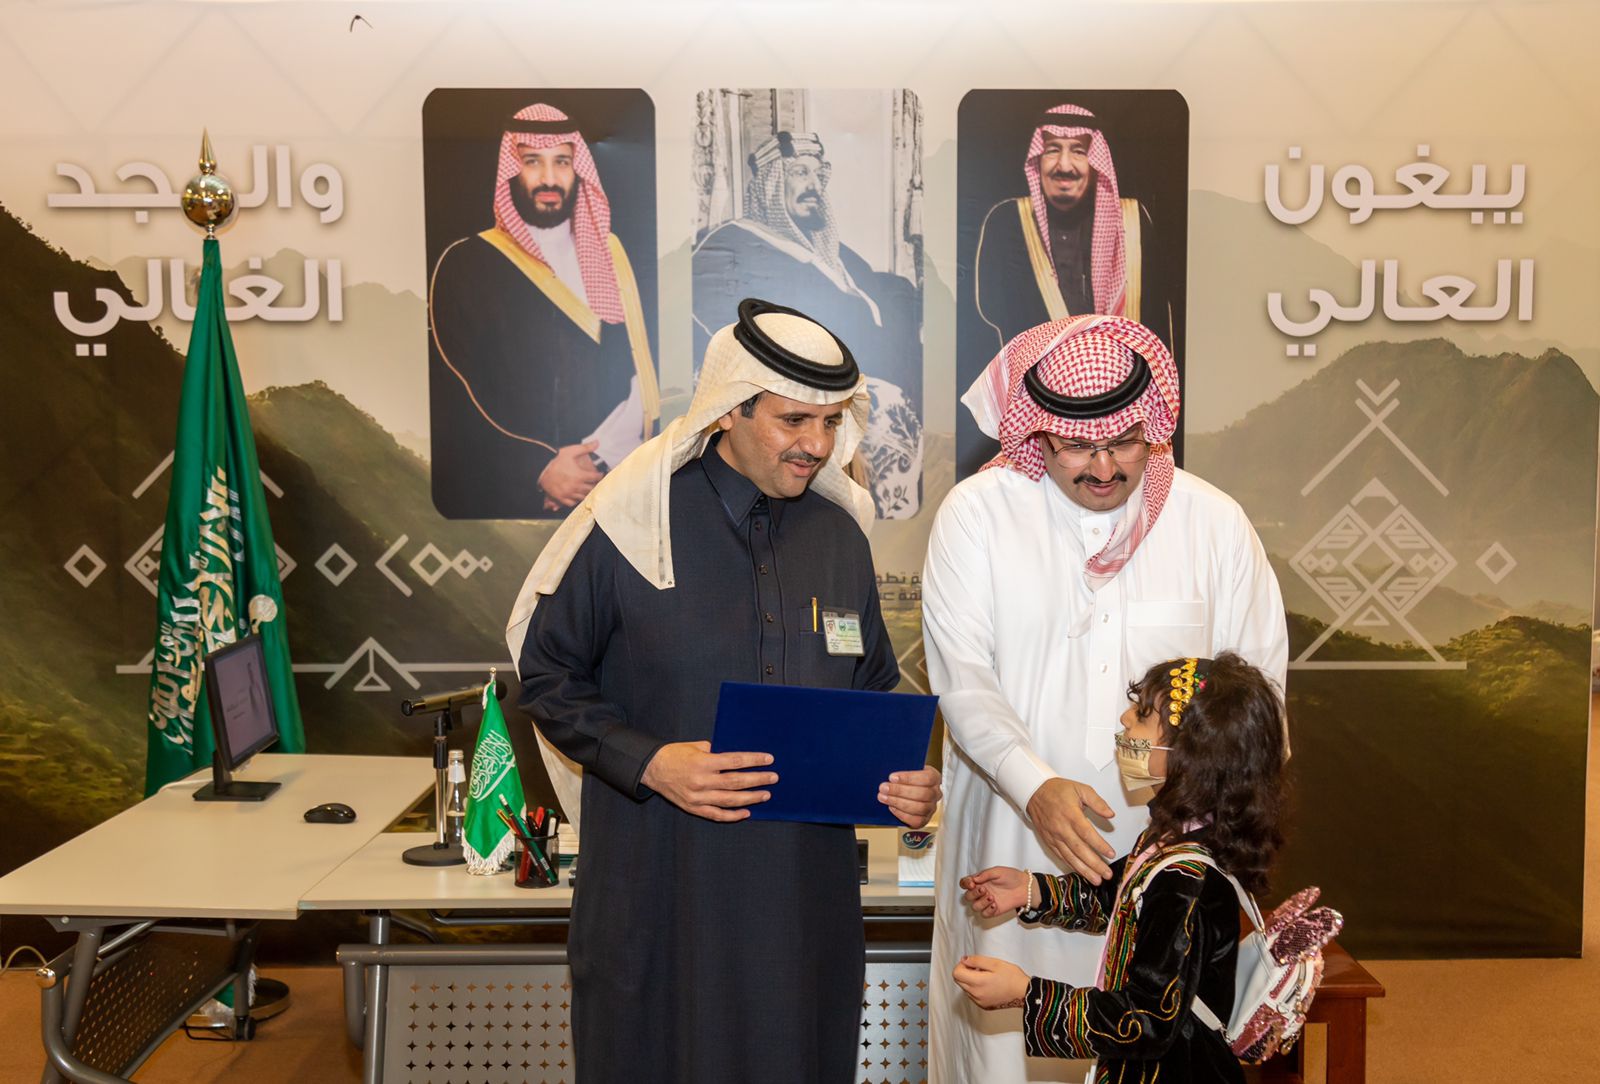 الأمير تركي بن طلال يدشن معرض إدارة تعليم عسير التثقيفي بقمم وشيم